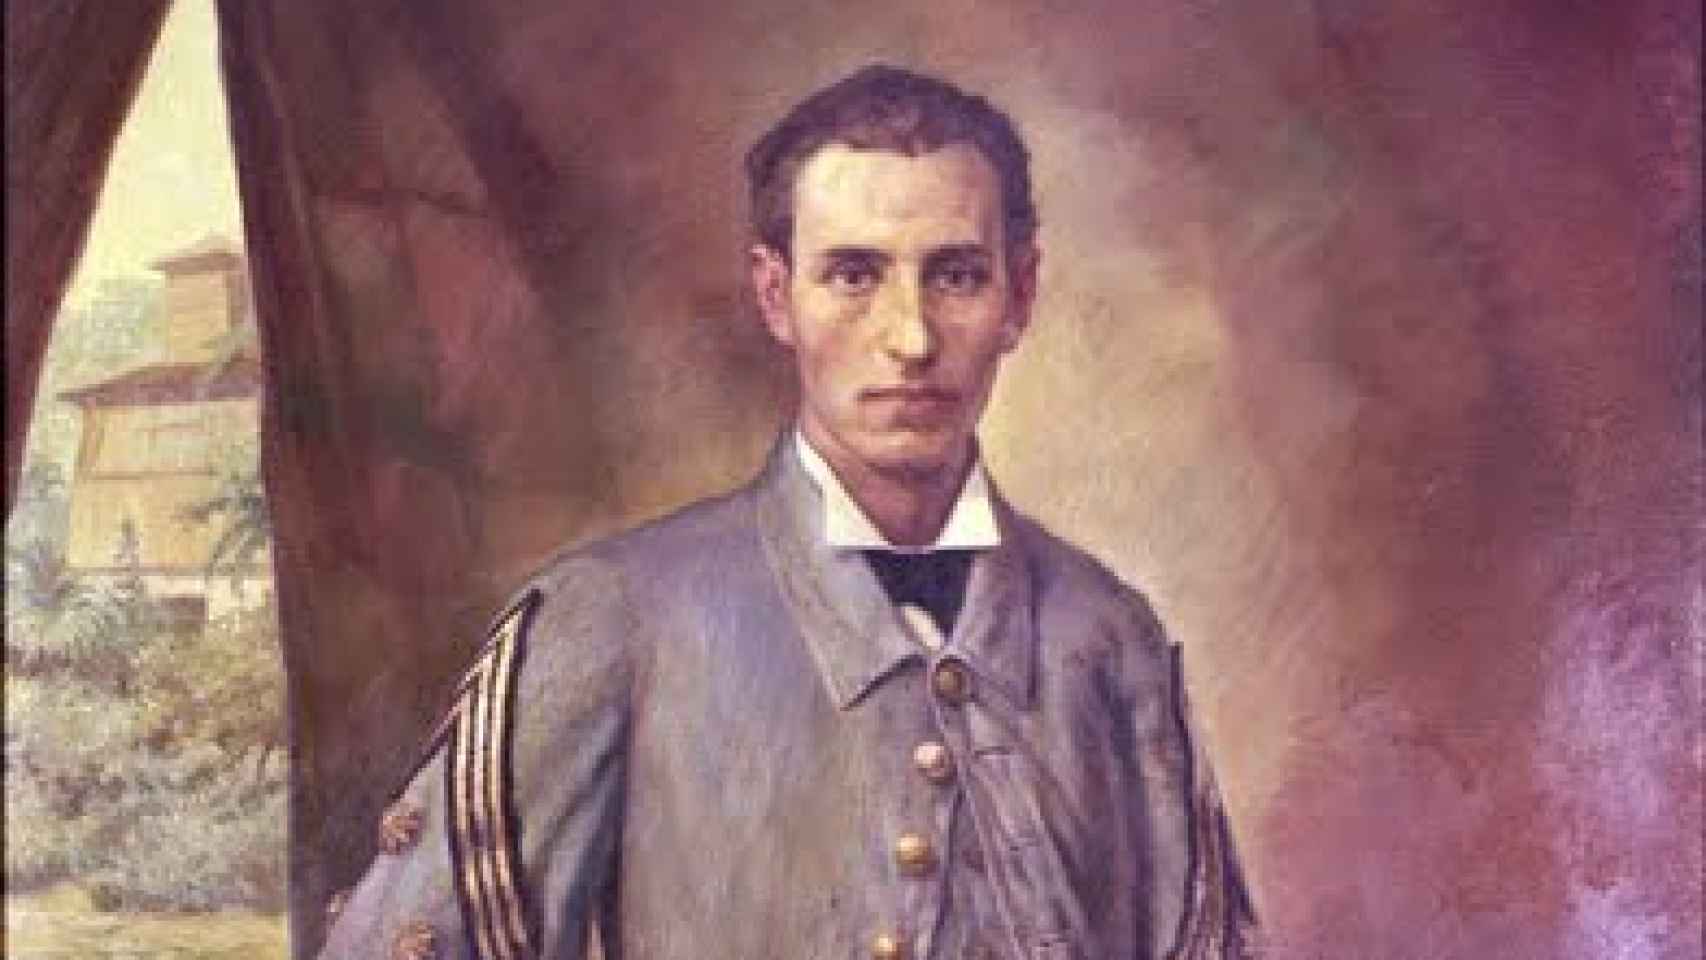 Retrato al óleo de Santiago Ramón y Cajal como capitán médico en 1874 durante la Guerra de los Diez Años en Cuba, realizado por Mariano Yzquierdo y Vivas.